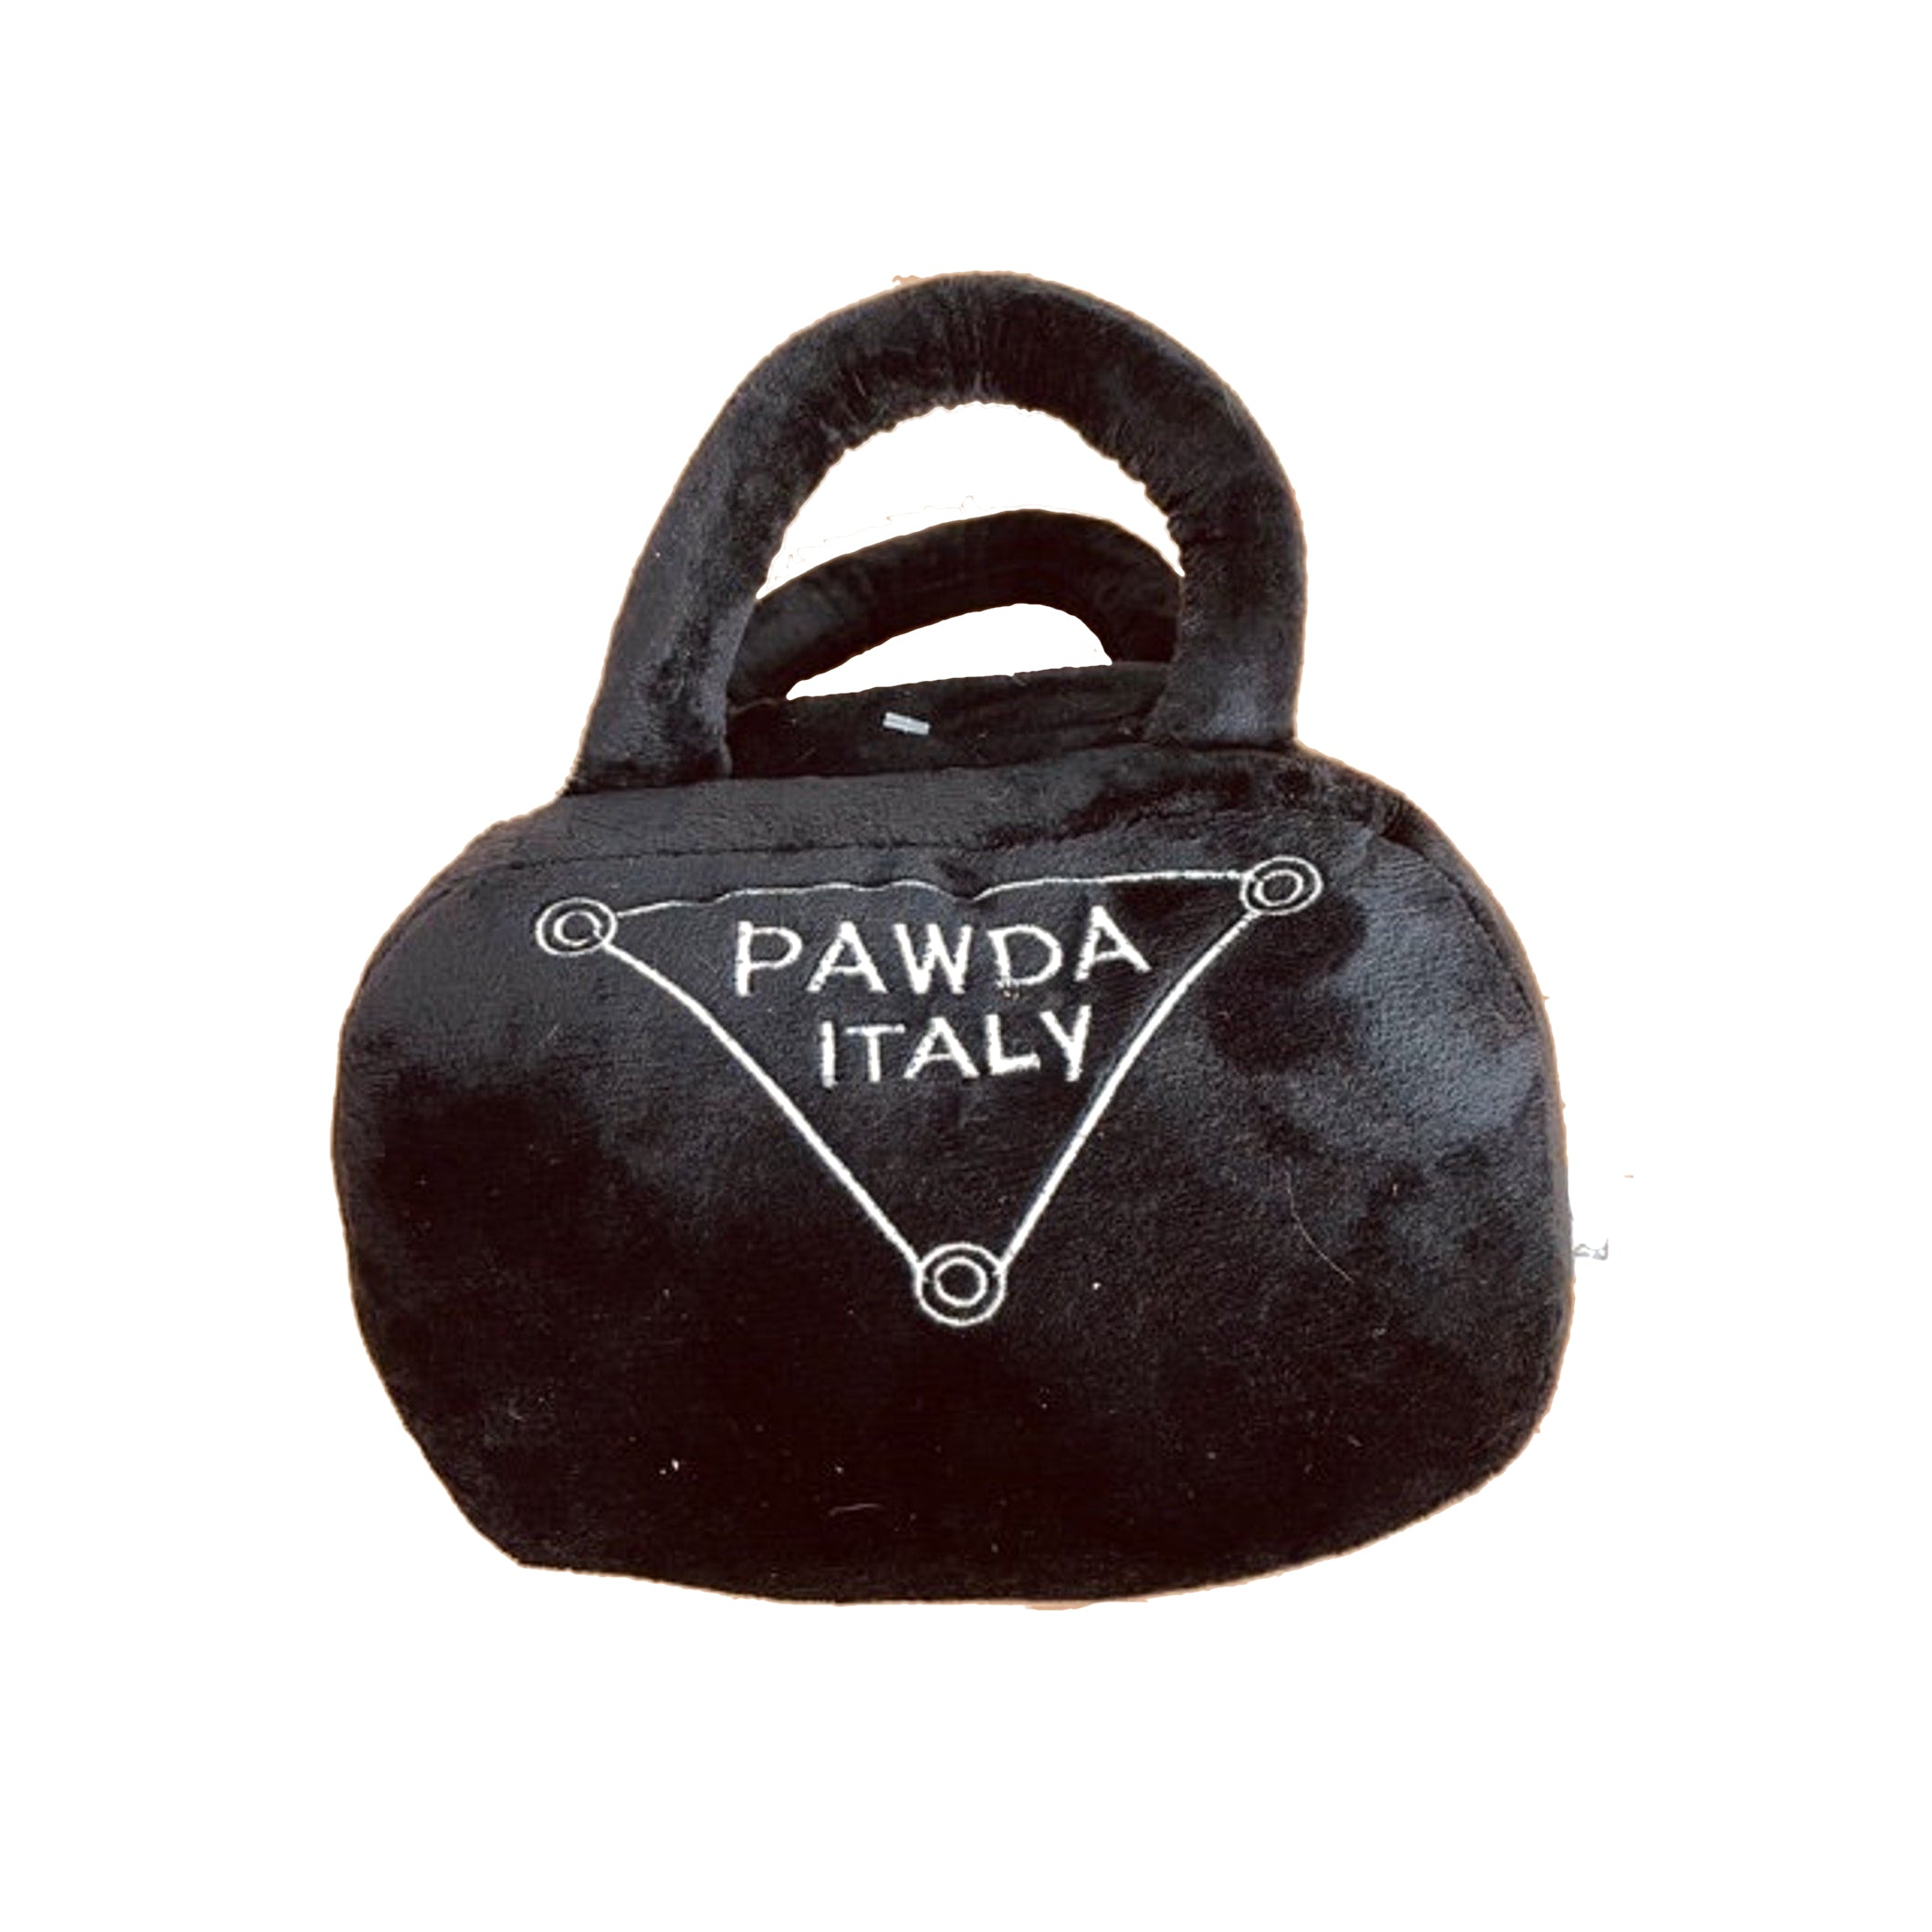 L'BARKERY - Pawda Plush Handbag Dog Toy